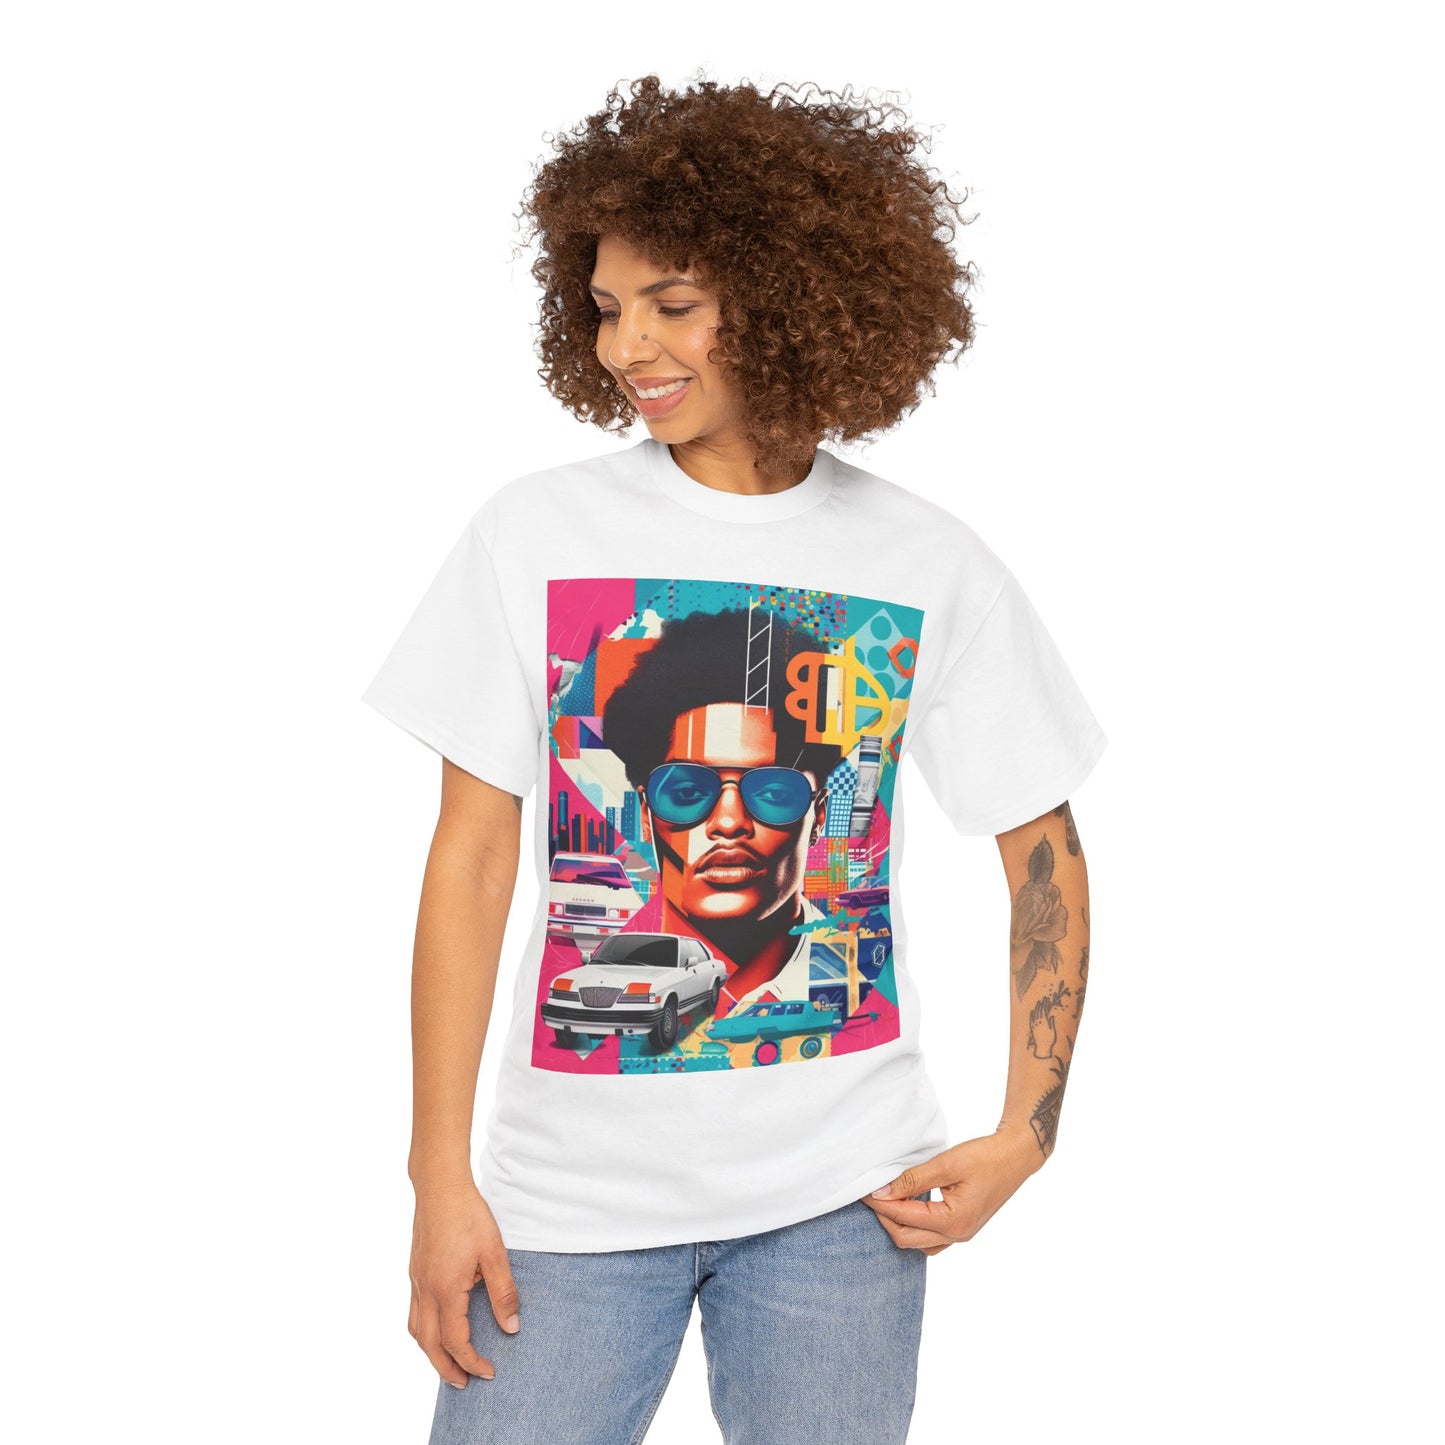 "Caribbean Jalen" T-shirt